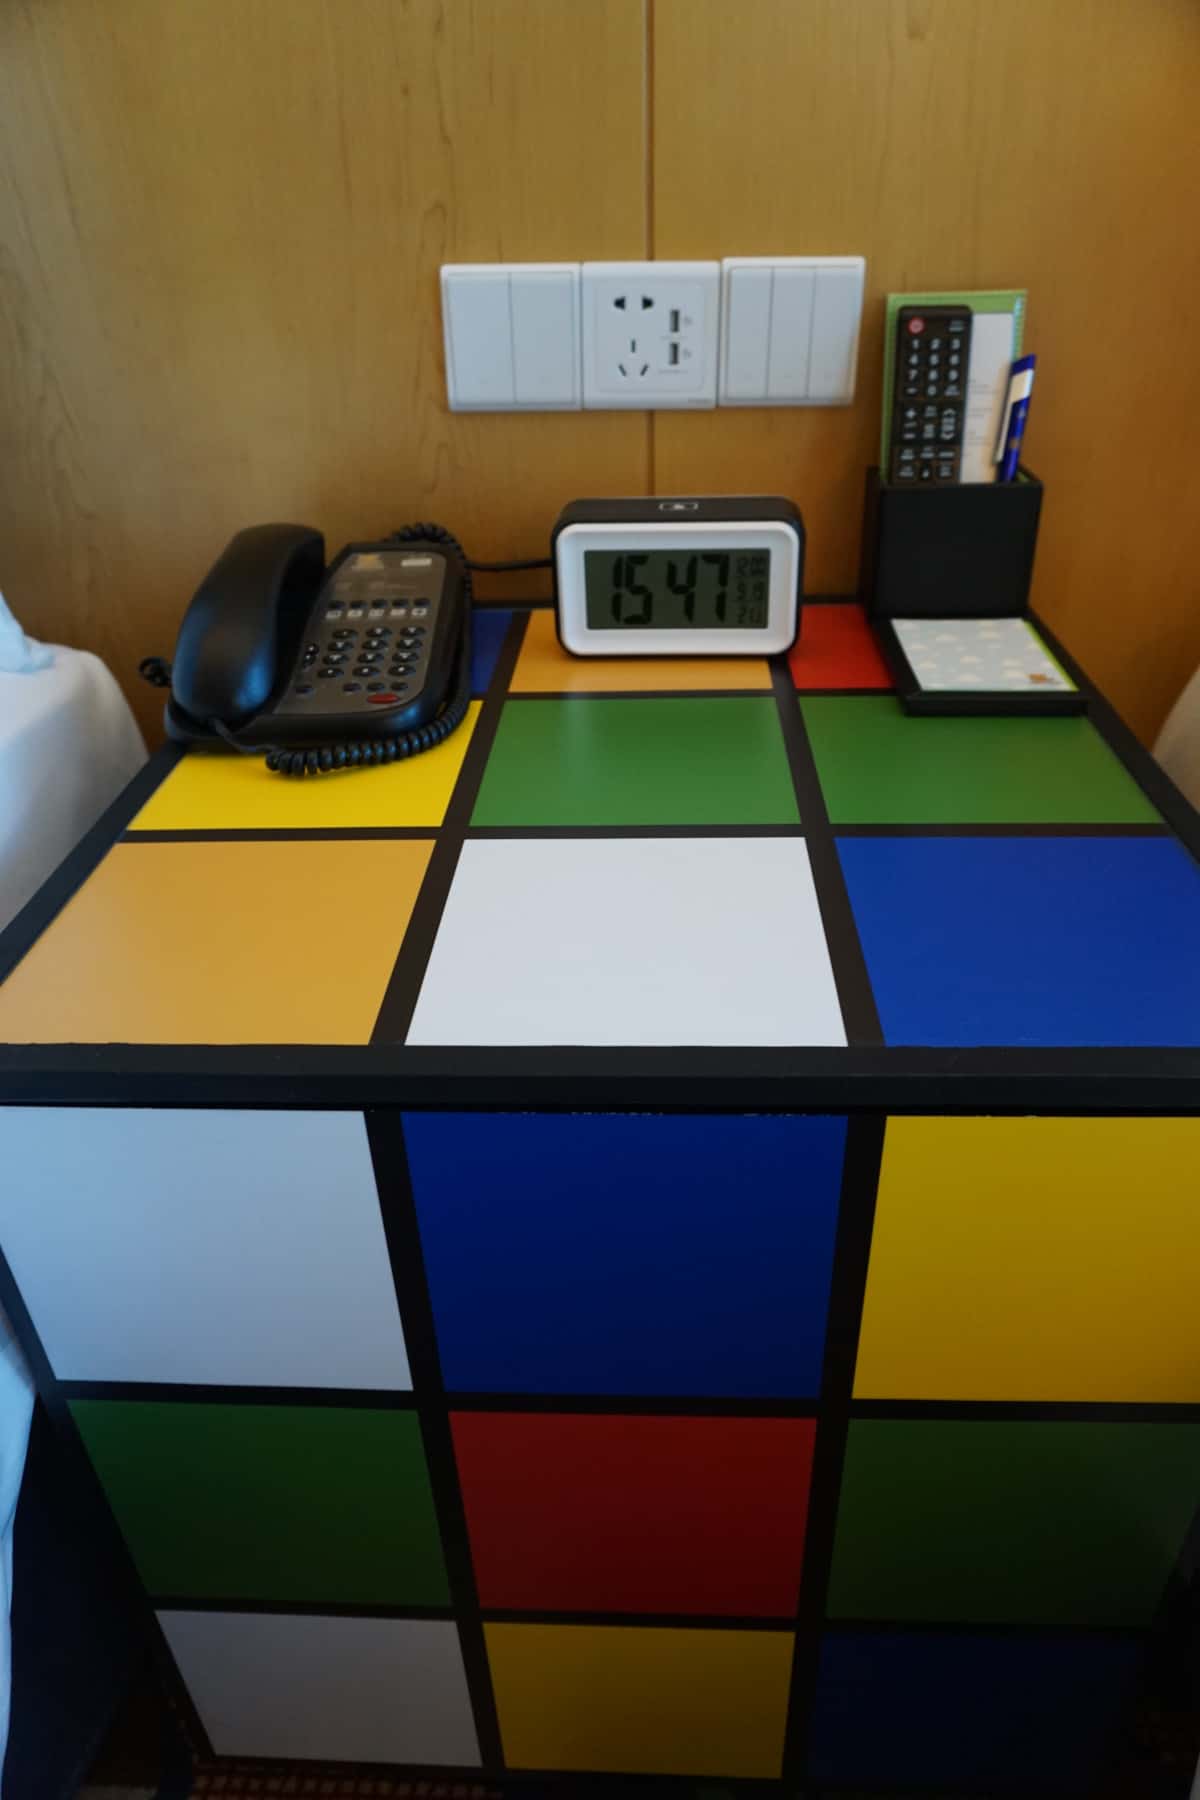 ルービックキューブの形の机